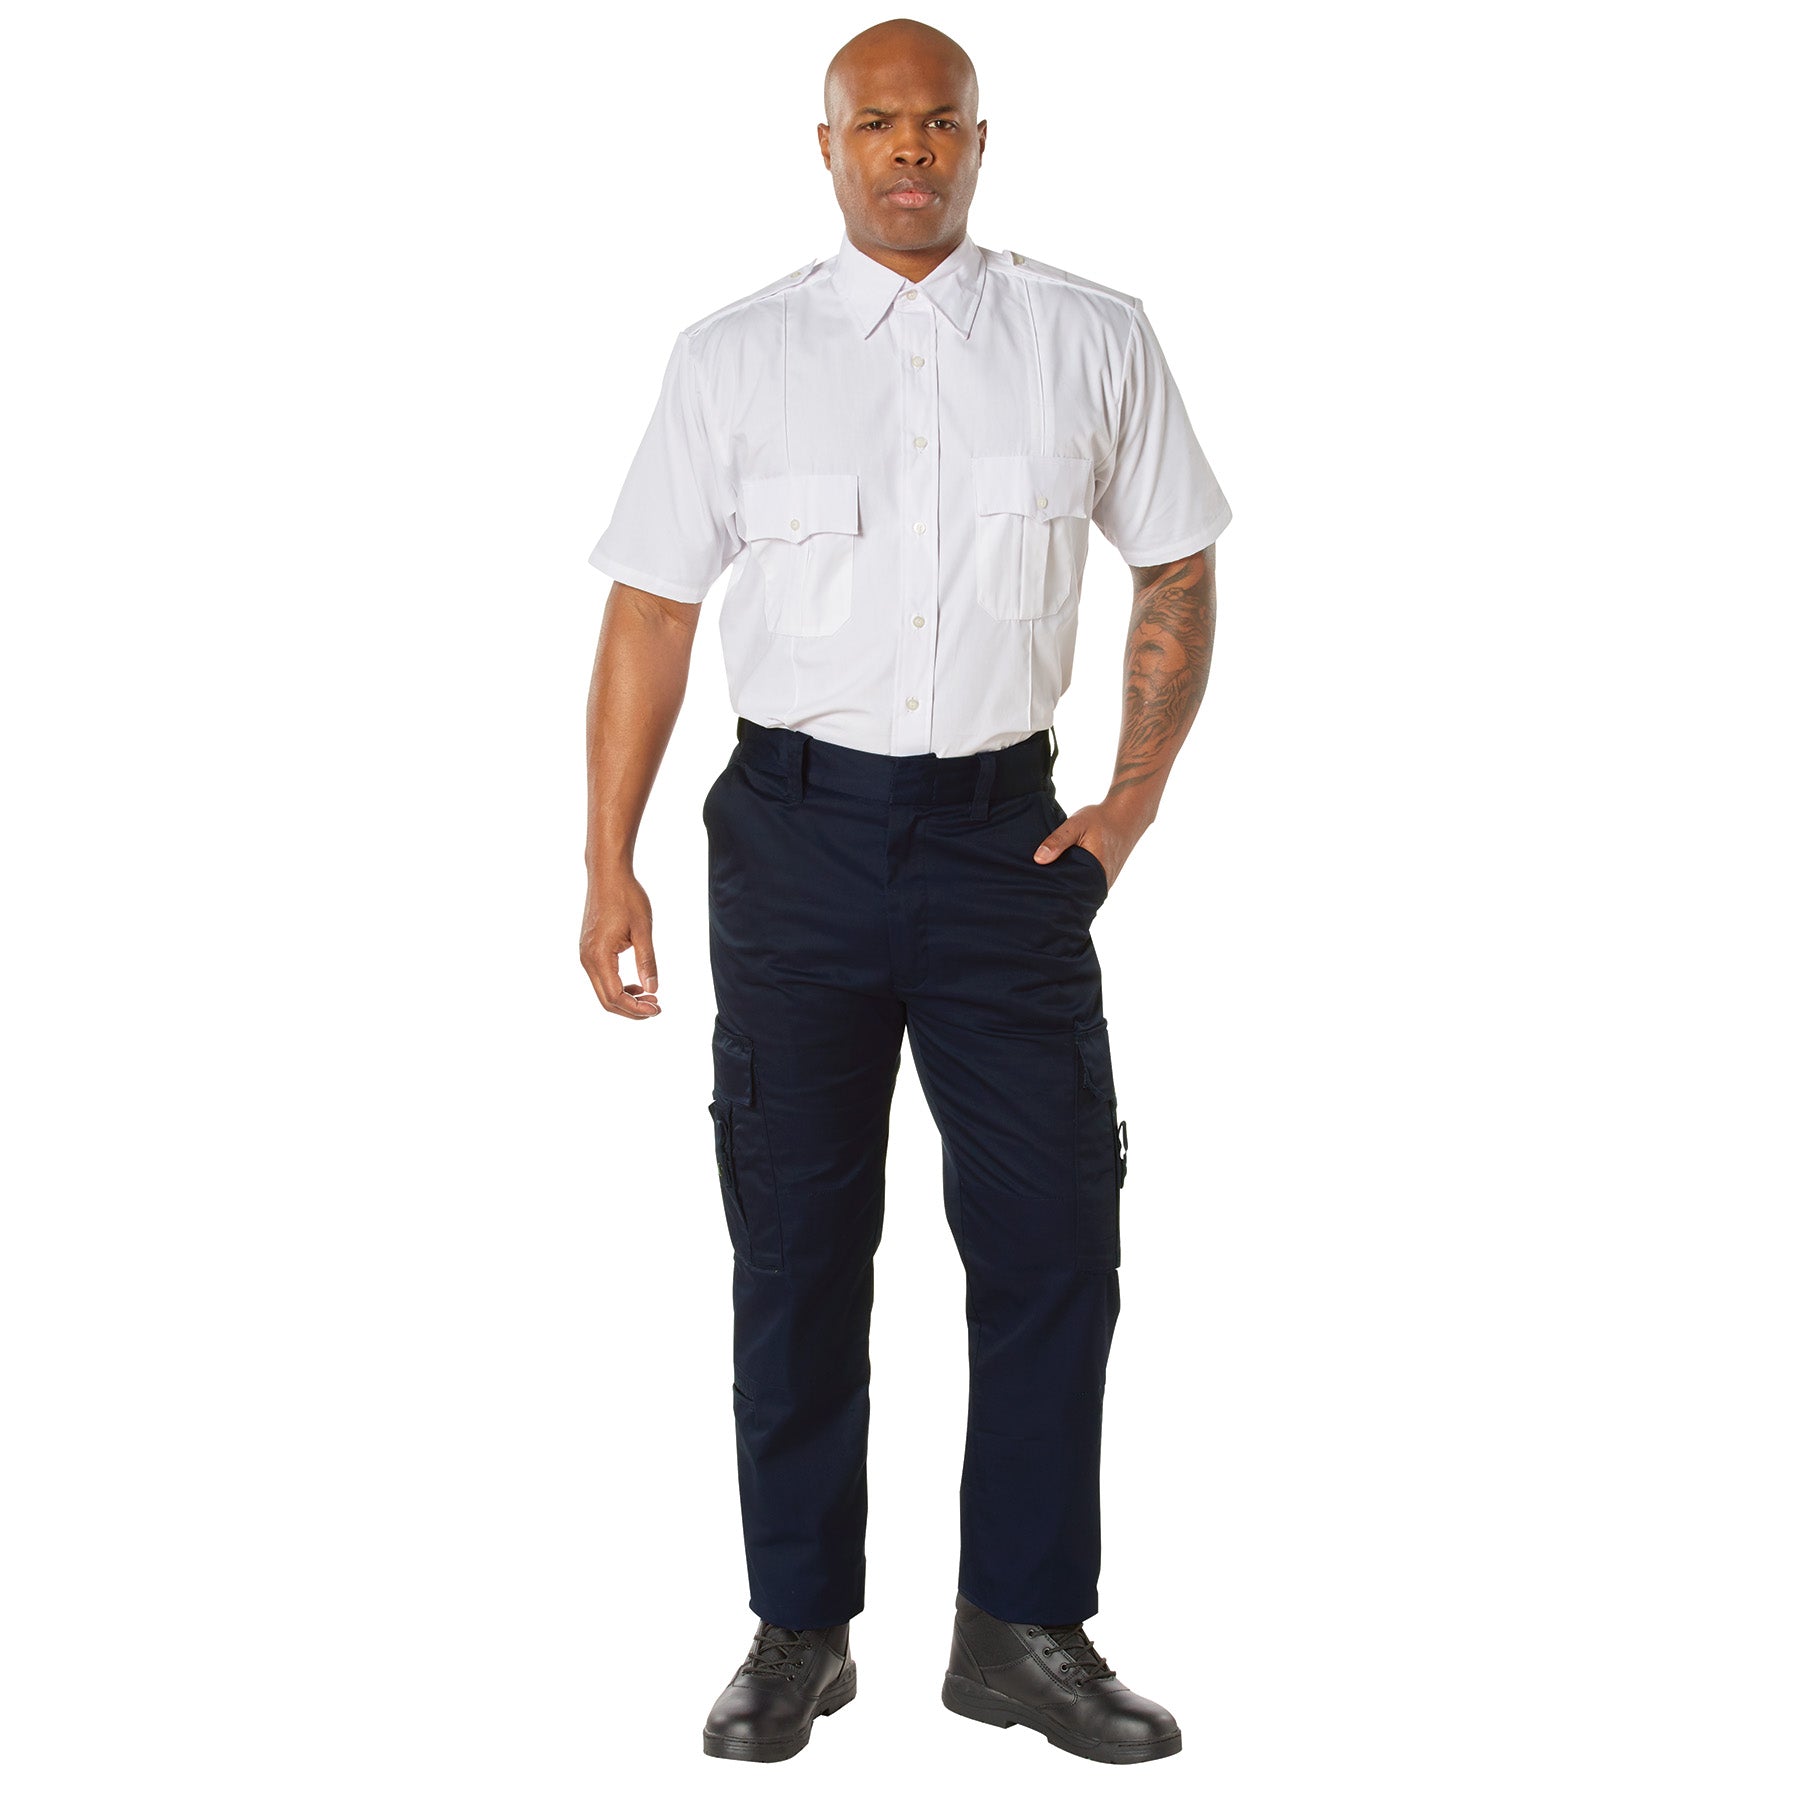 [Public Safety] Men's Poly/Cotton EMT Pants Navy Blue